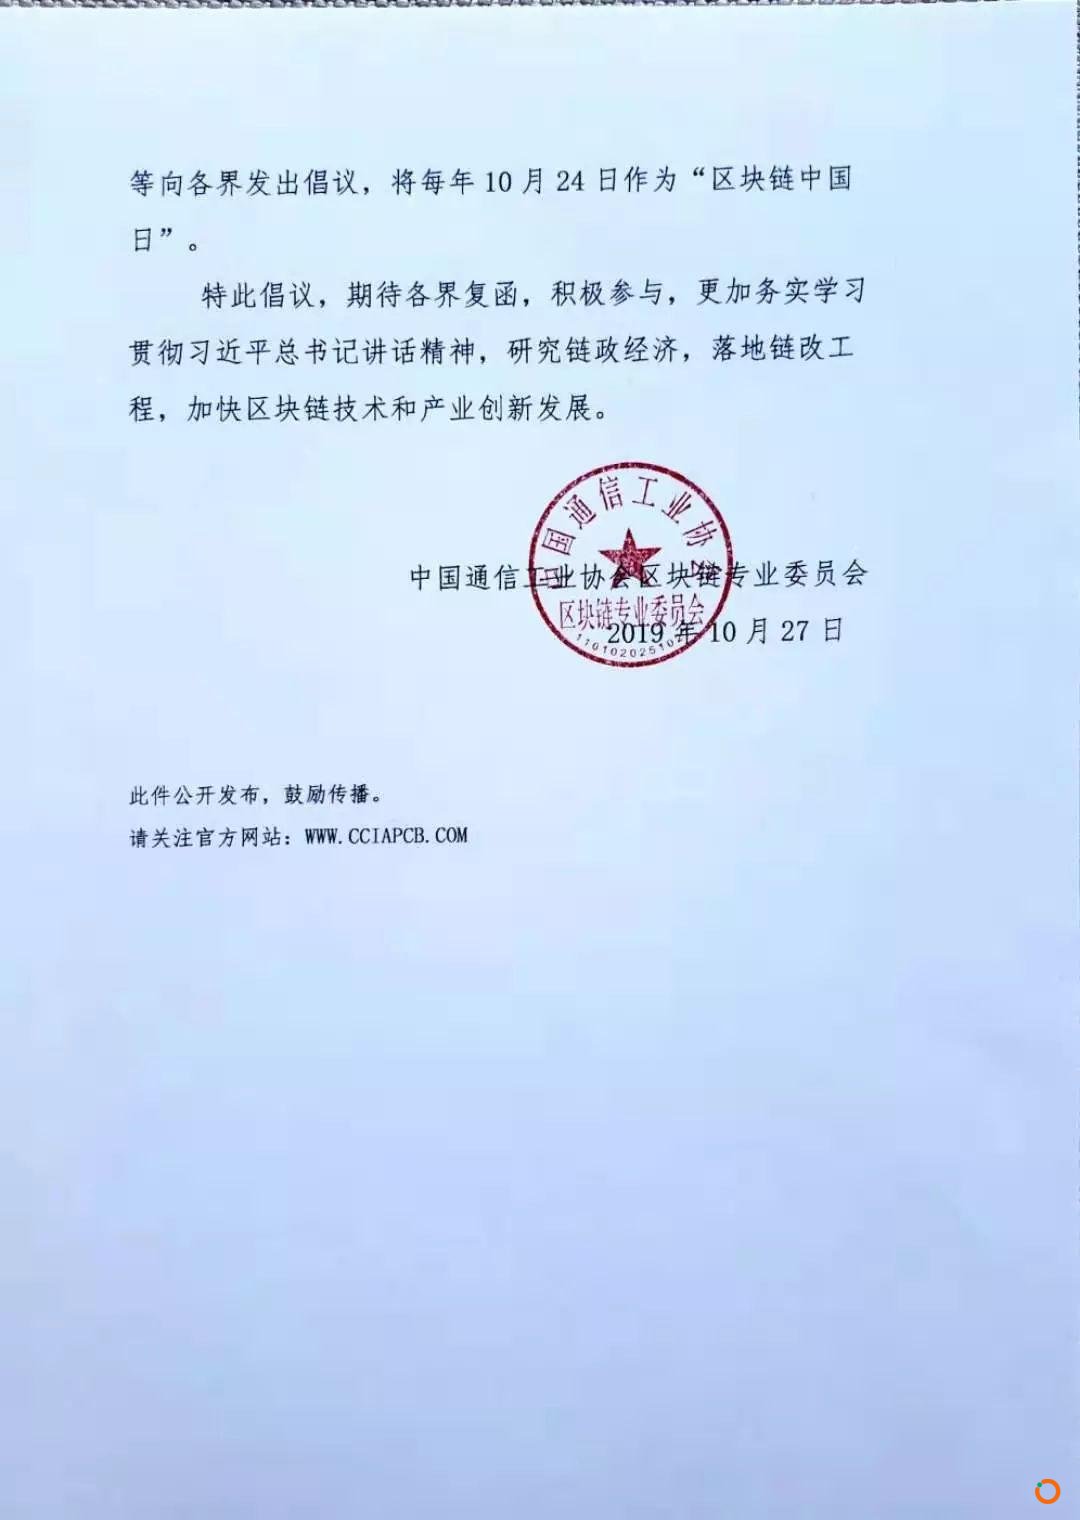 中国通信工业协会区块链专业委员会倡议：将每年10月24日设为“区块链中国日”